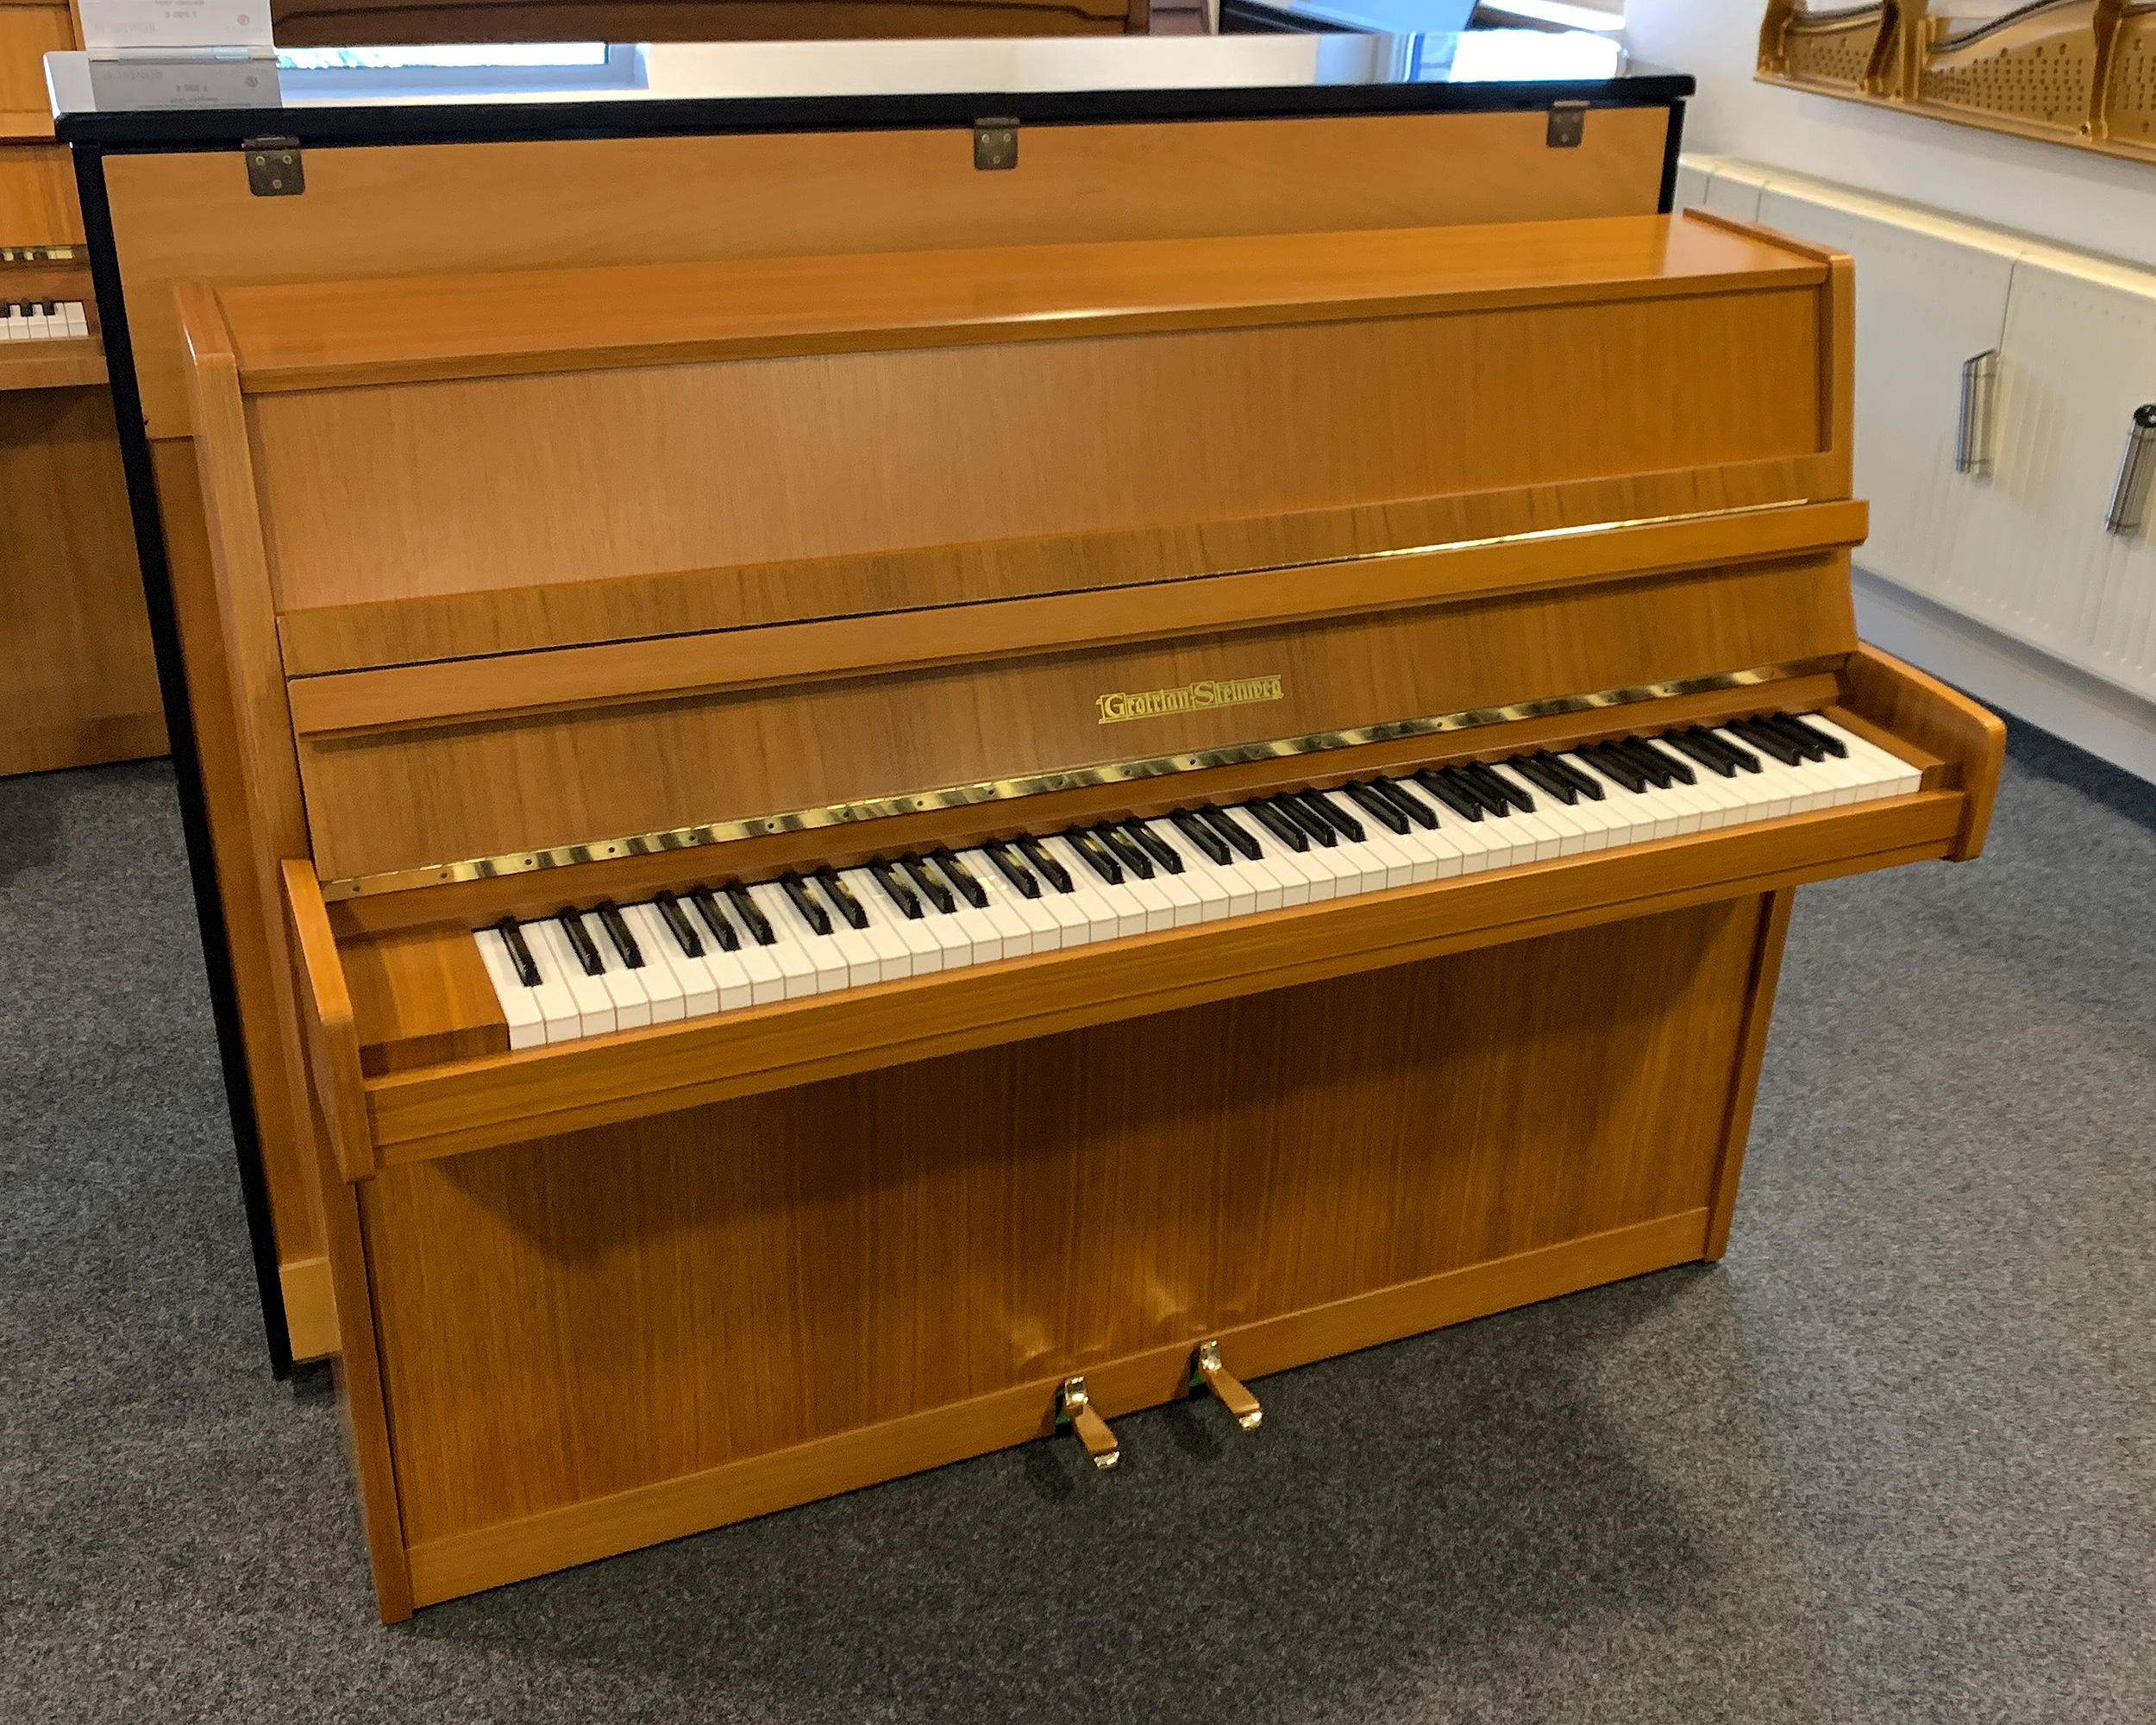 Grotrian-Steinweg Klavier - Modell 110 in Nußbaum - Baujahr 1977